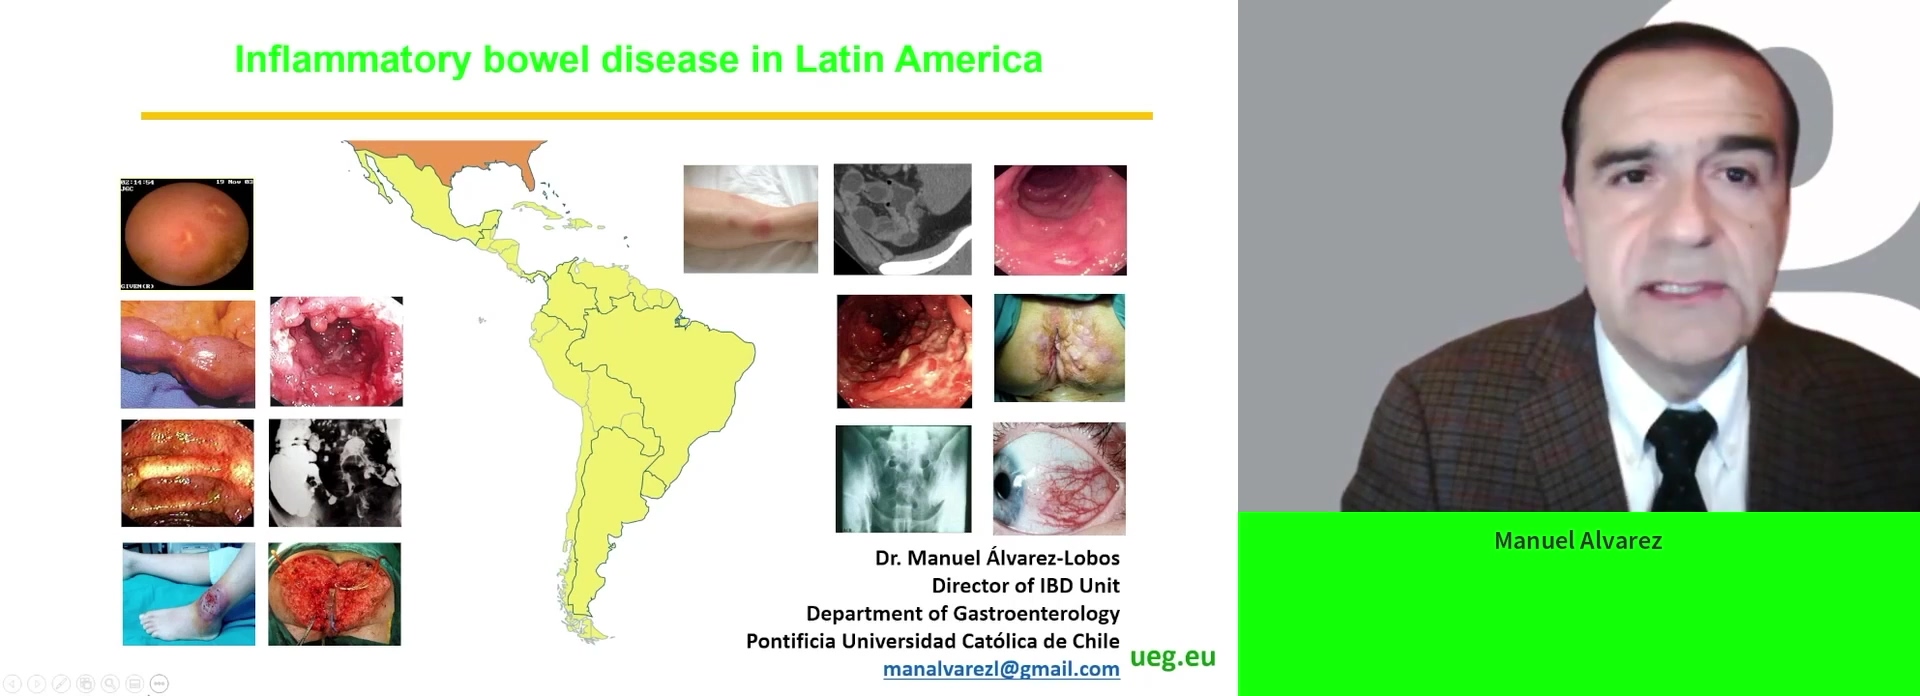 Inflammatory bowel diseases in Latin America